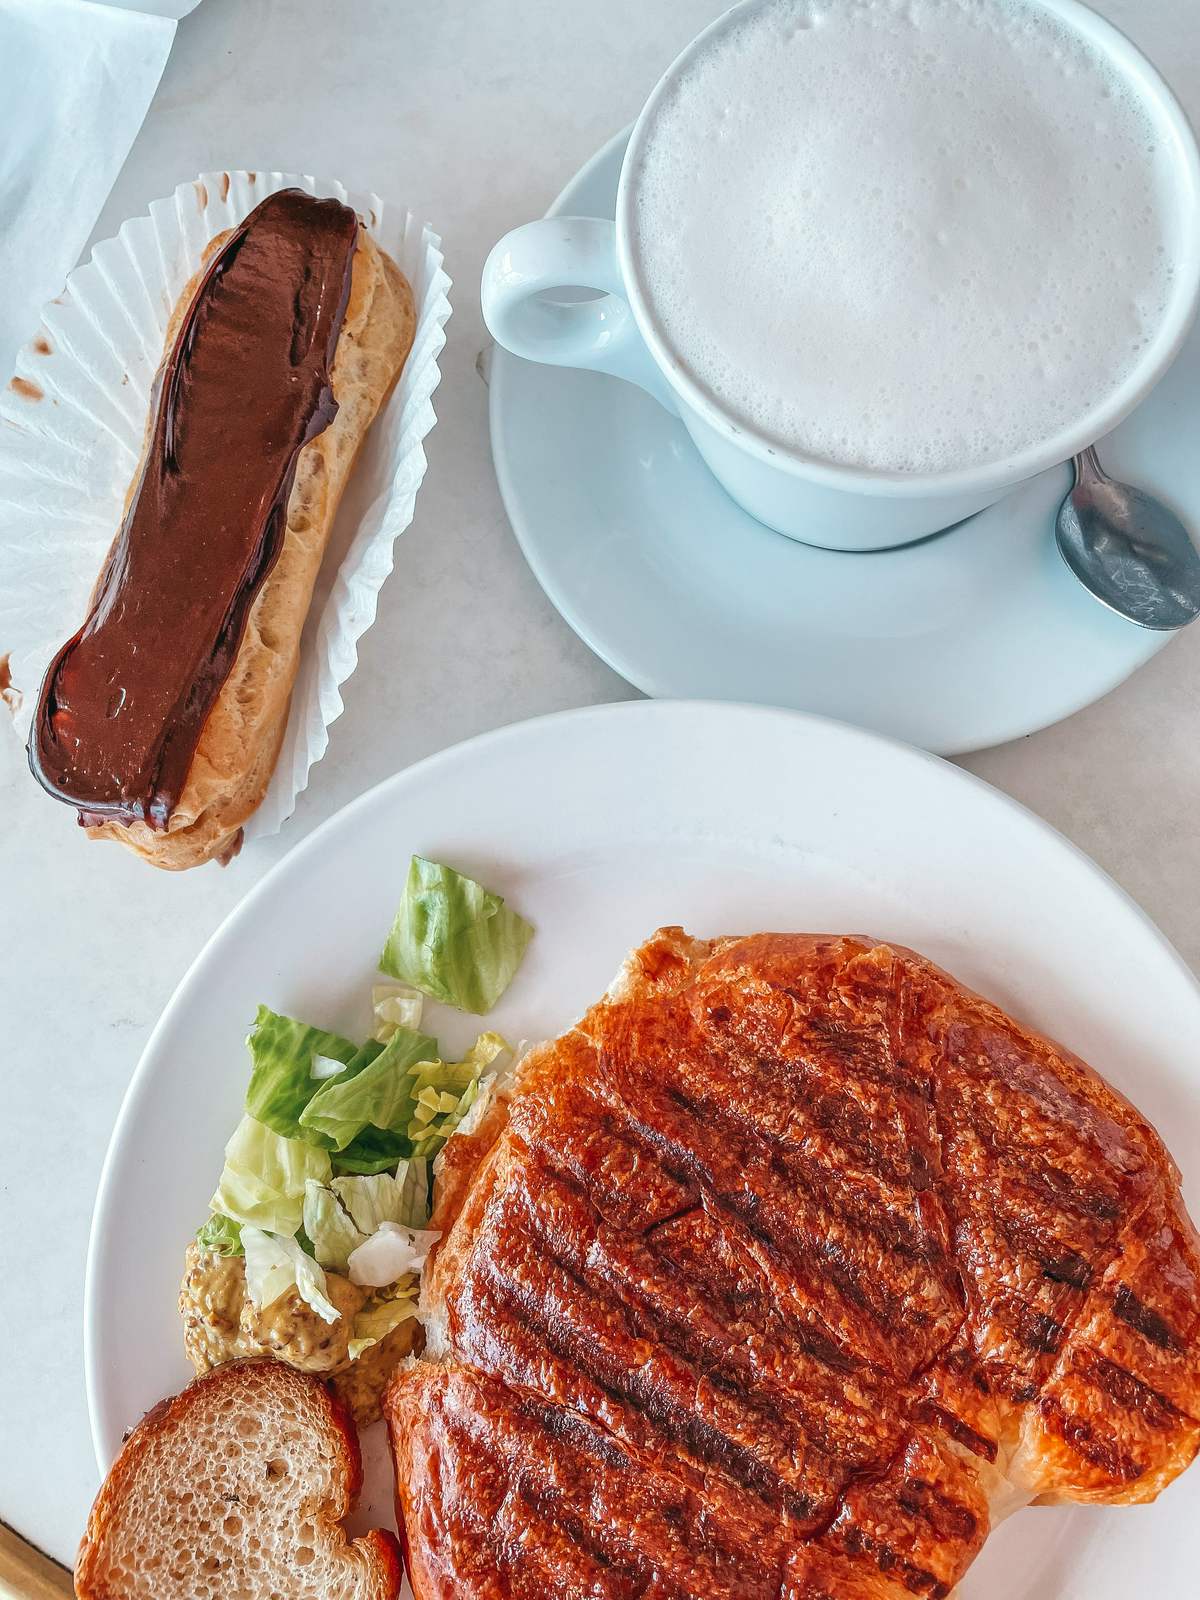 Croissant and eclair from Cafe de Paris